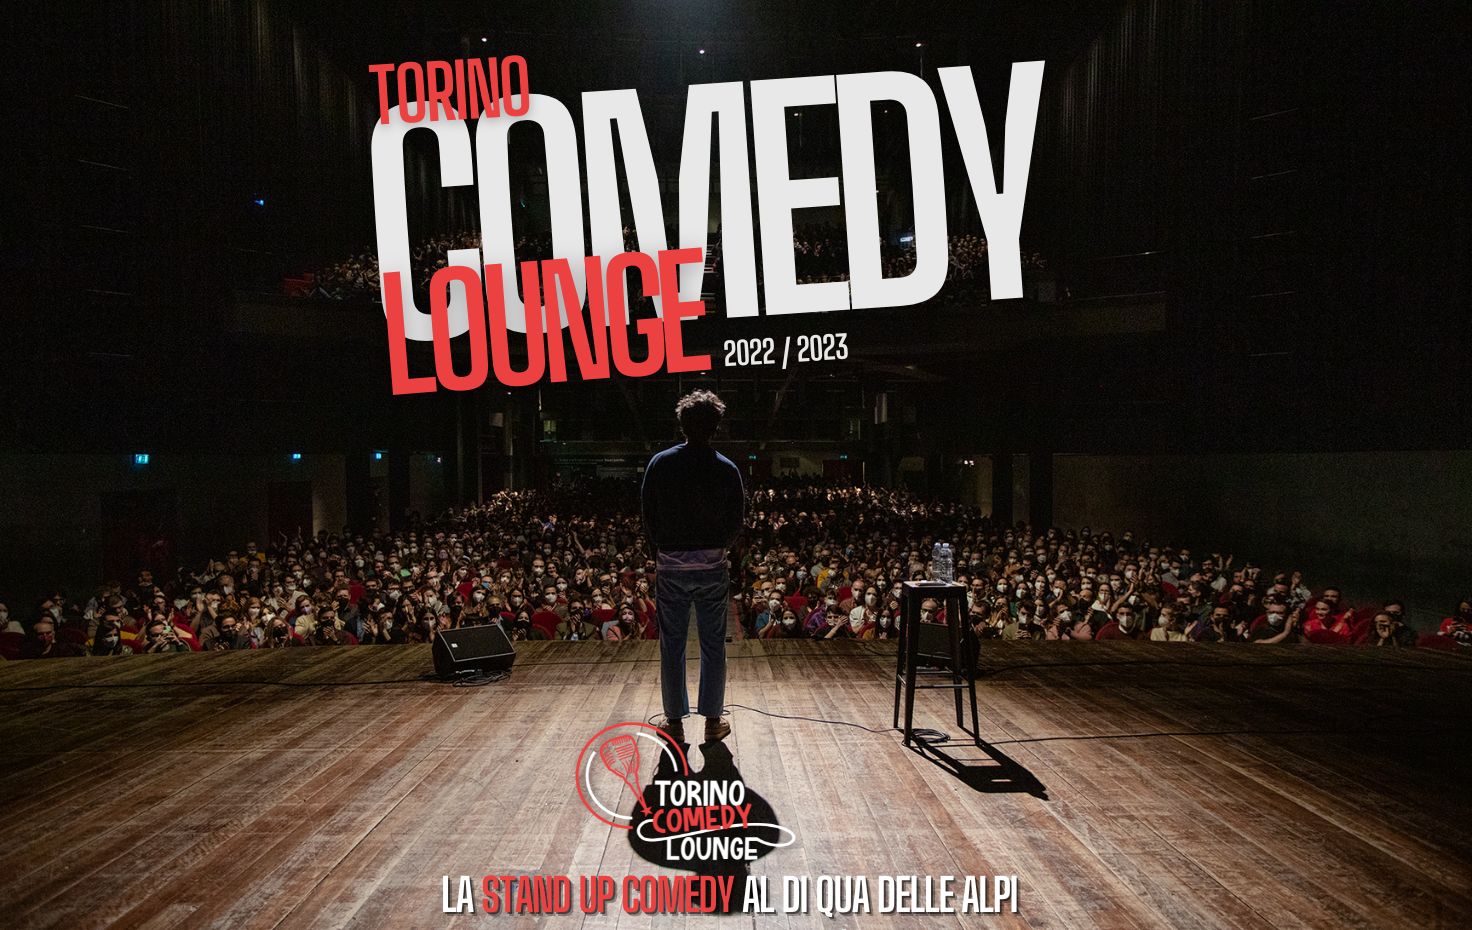 Torino Comedy Lounge